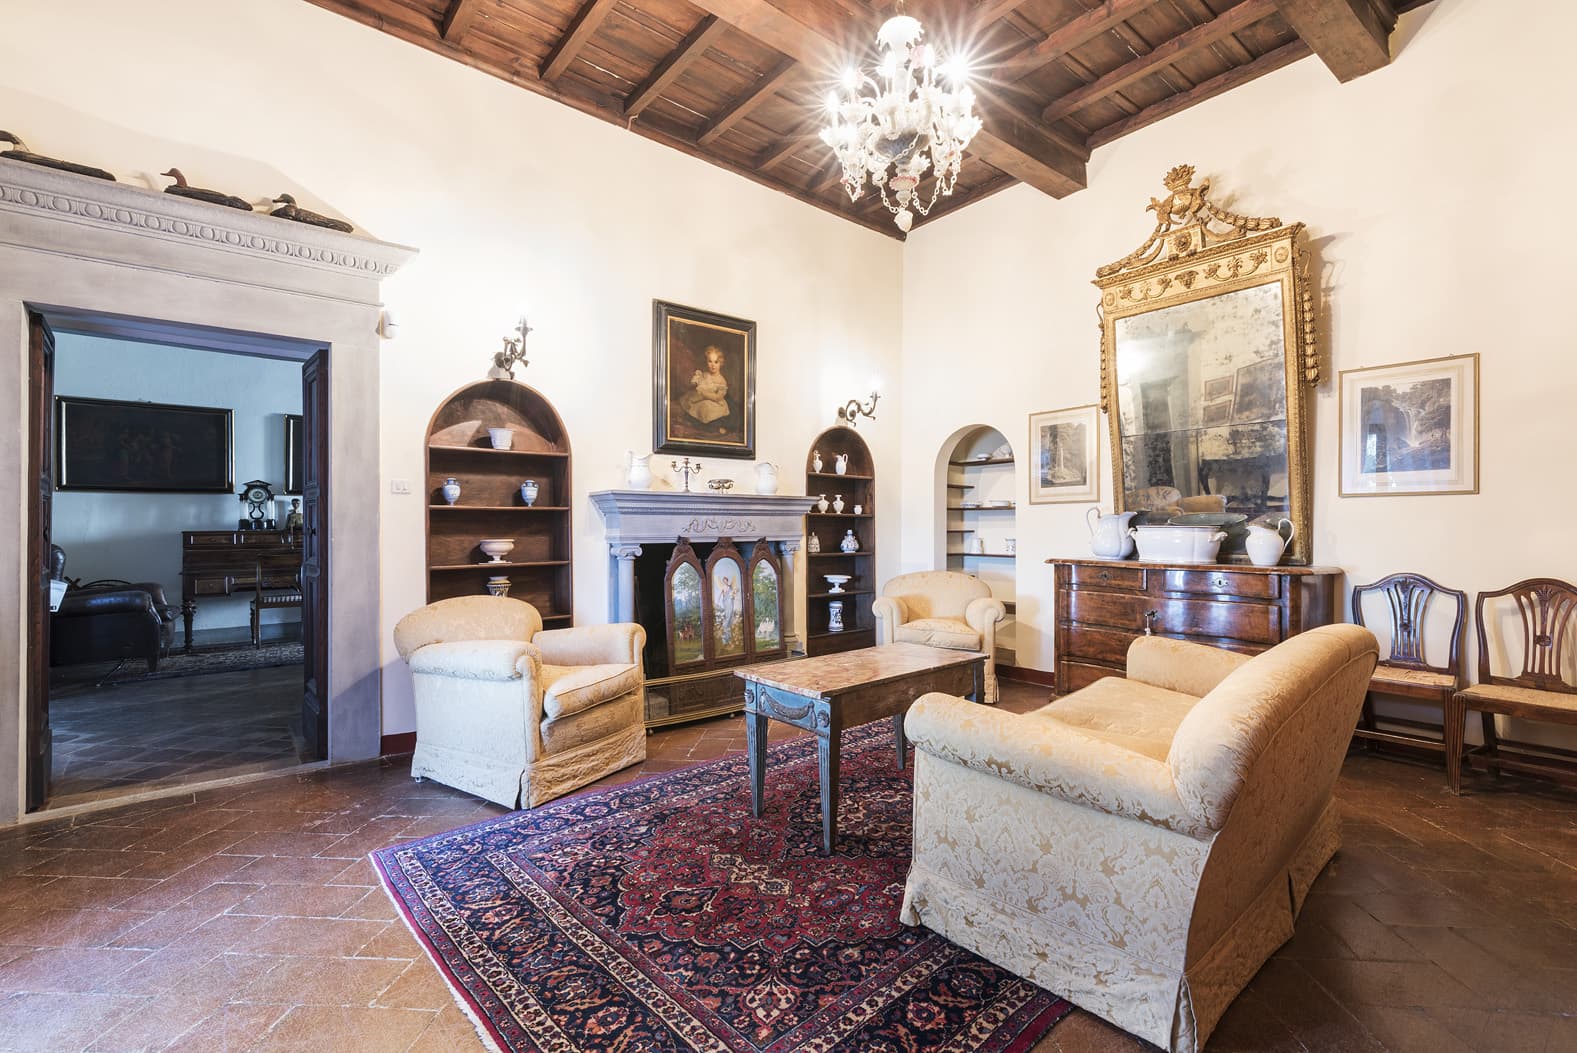  Bedroom Villa For Sale Borgo In Chianti Lp0793 15a7512c4d806100.jpg